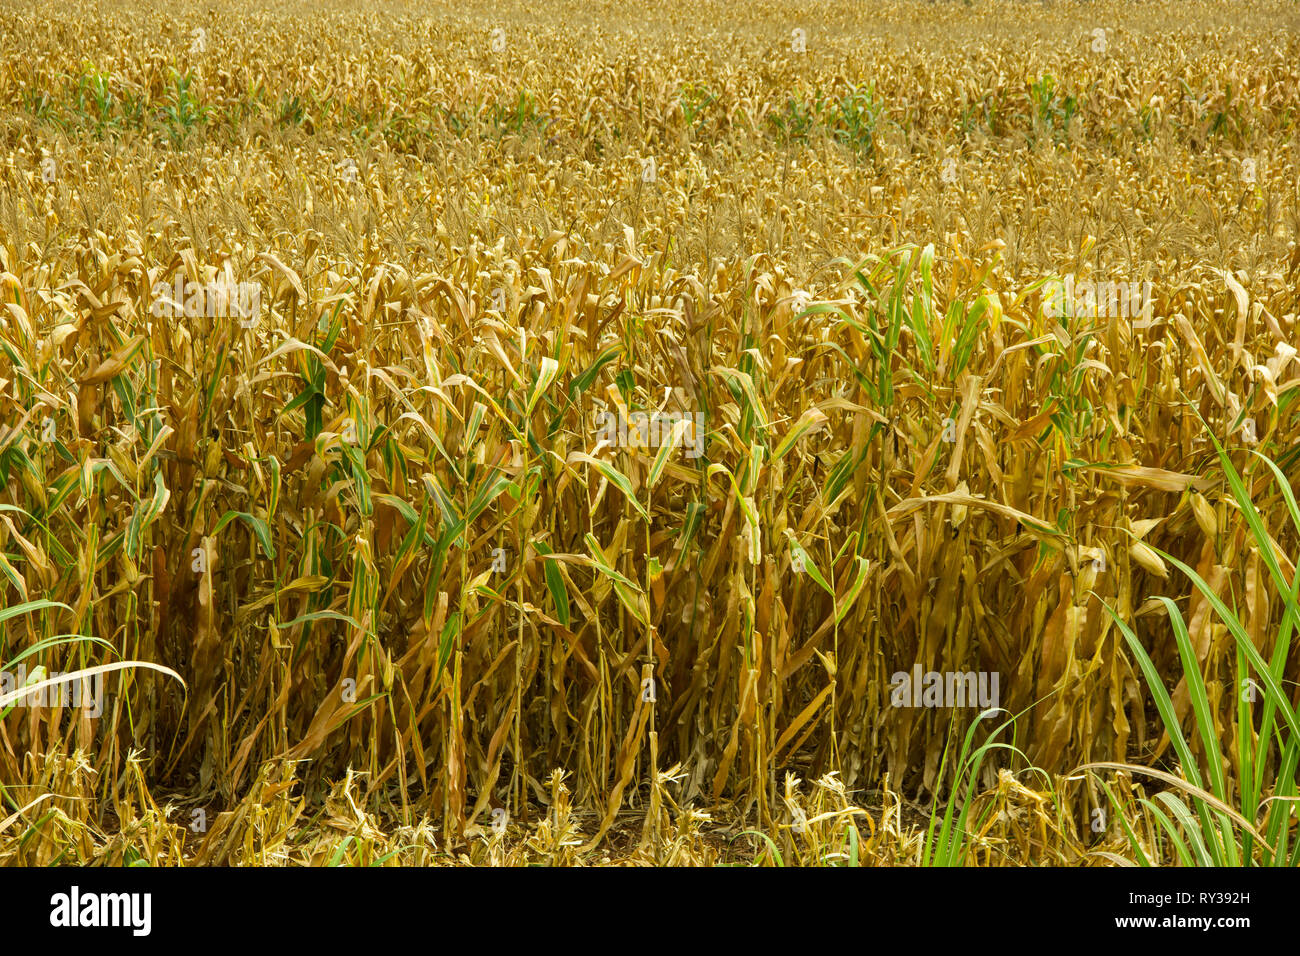 Agrarbereich mit trockenem Mais zur Ernte bereit Stockfoto